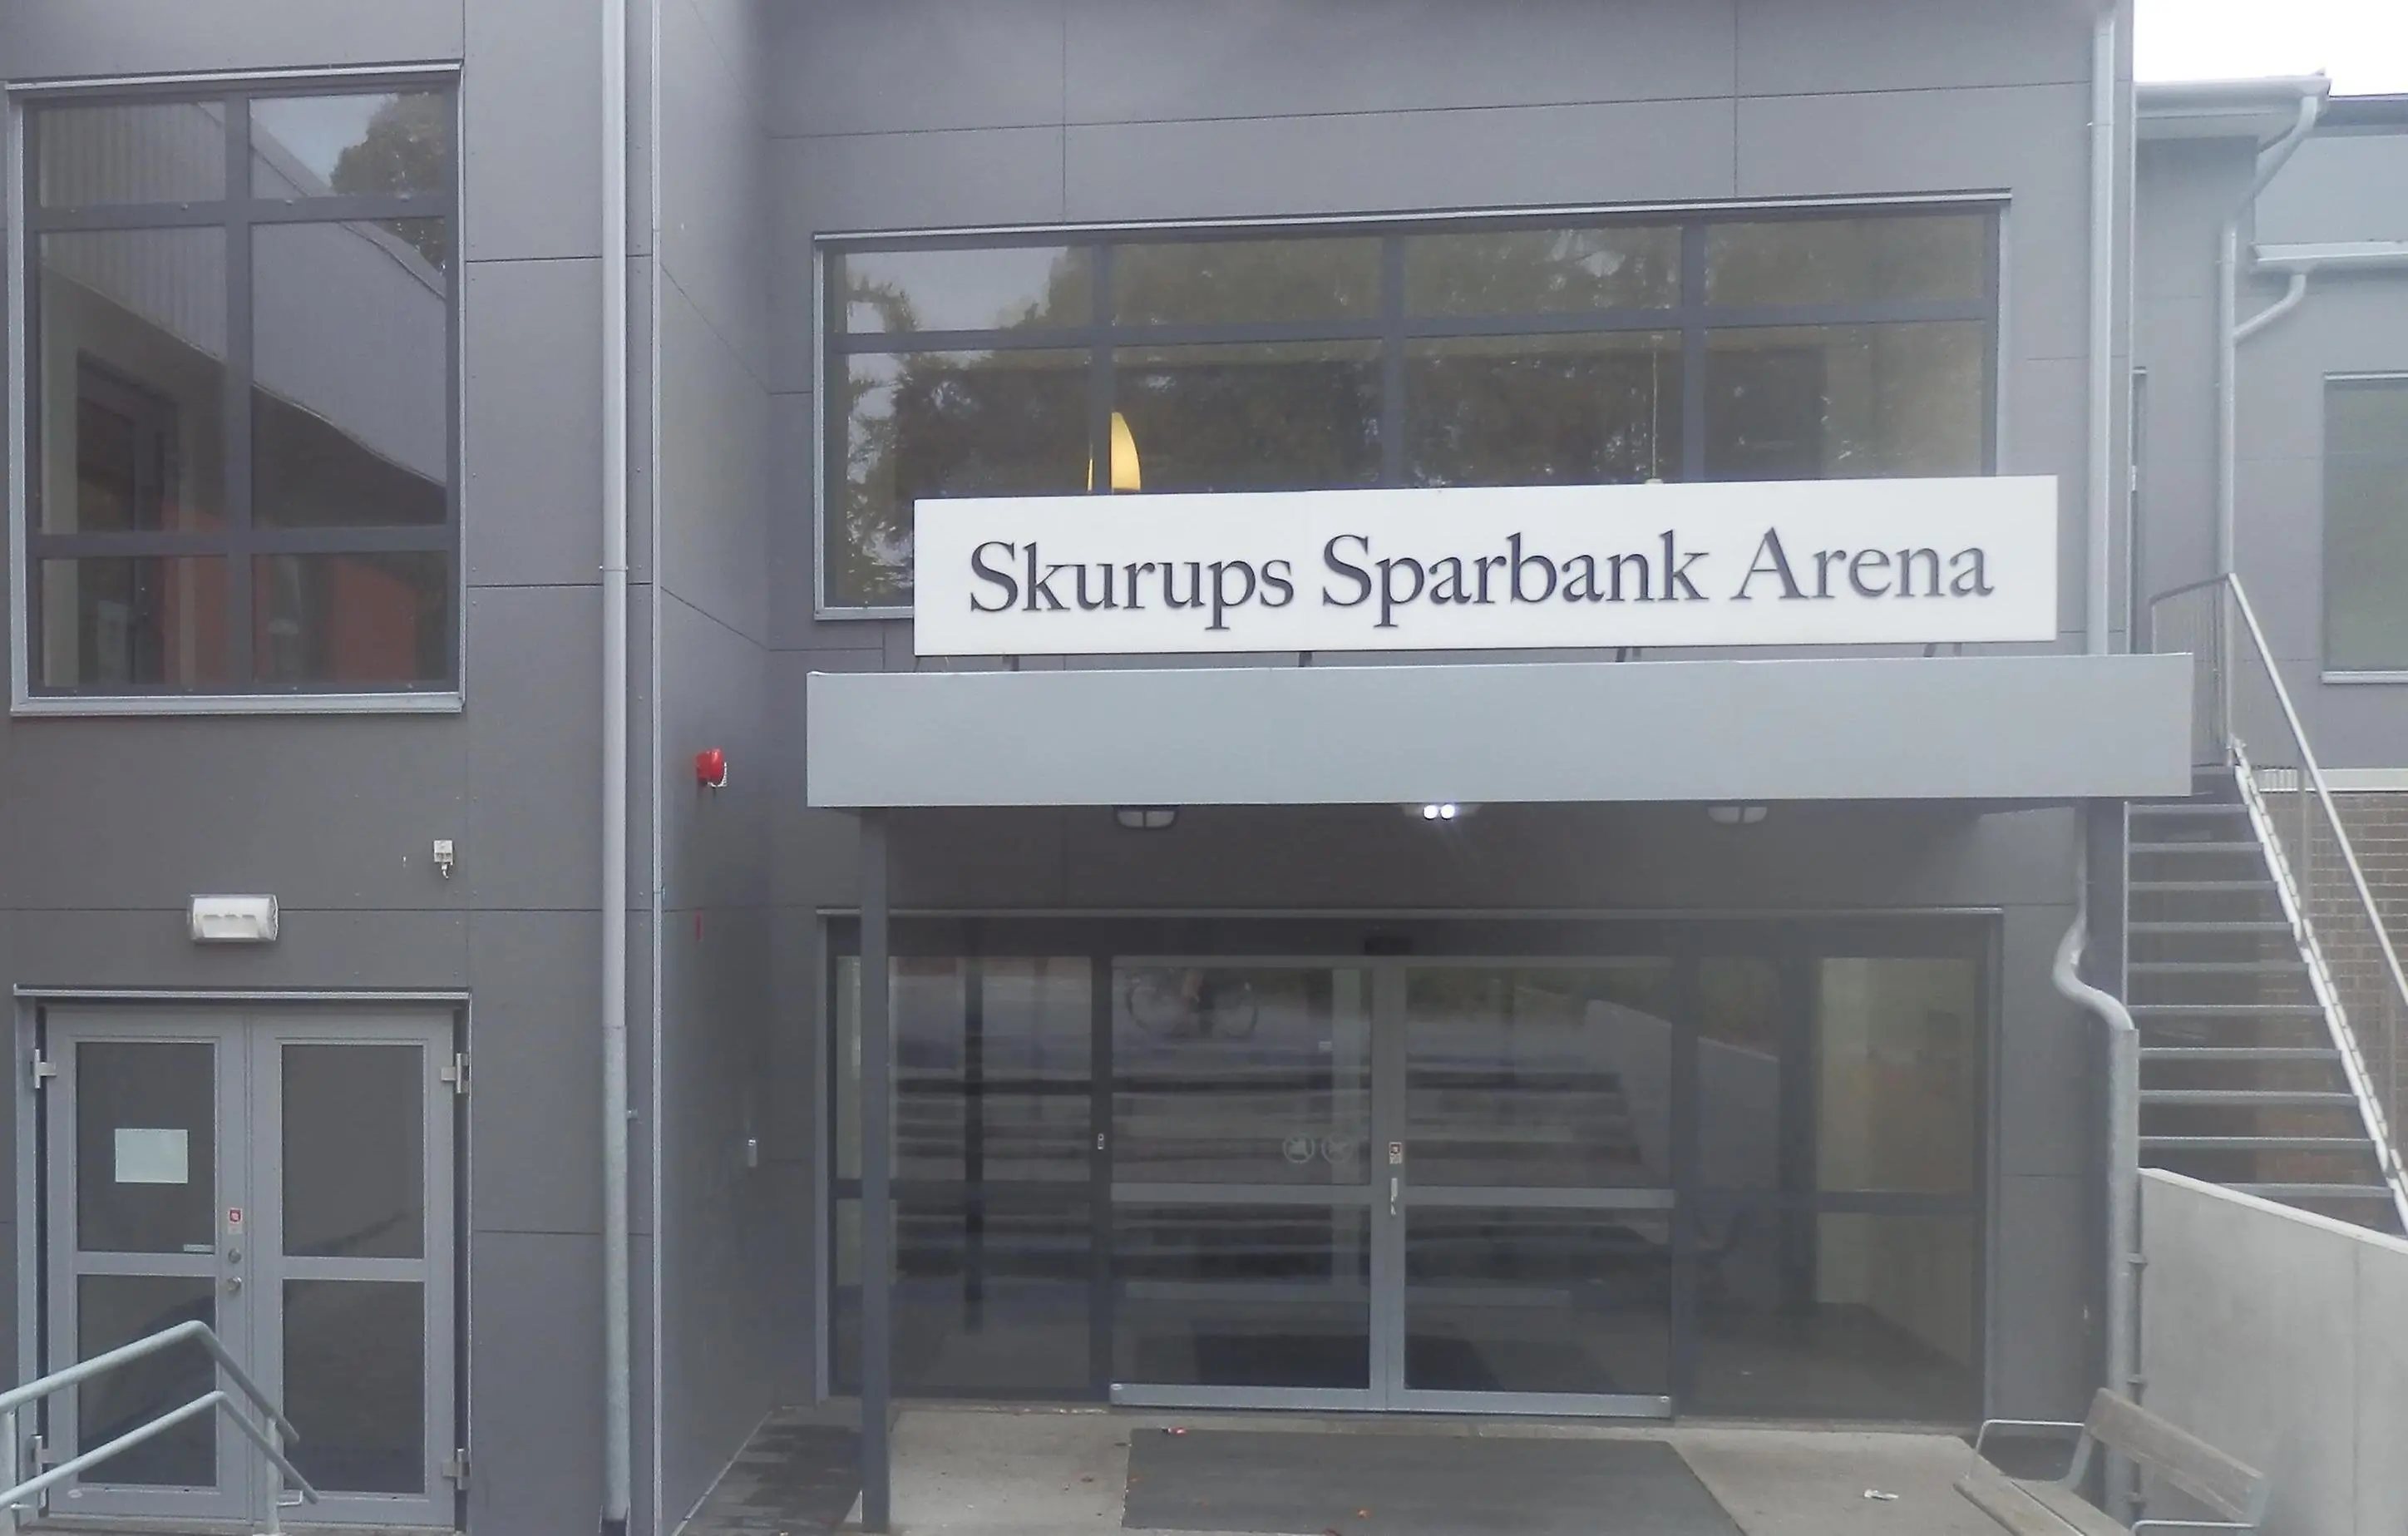 Fasad, dörr, fönster, skylt med texten Skurups sparbank arena.